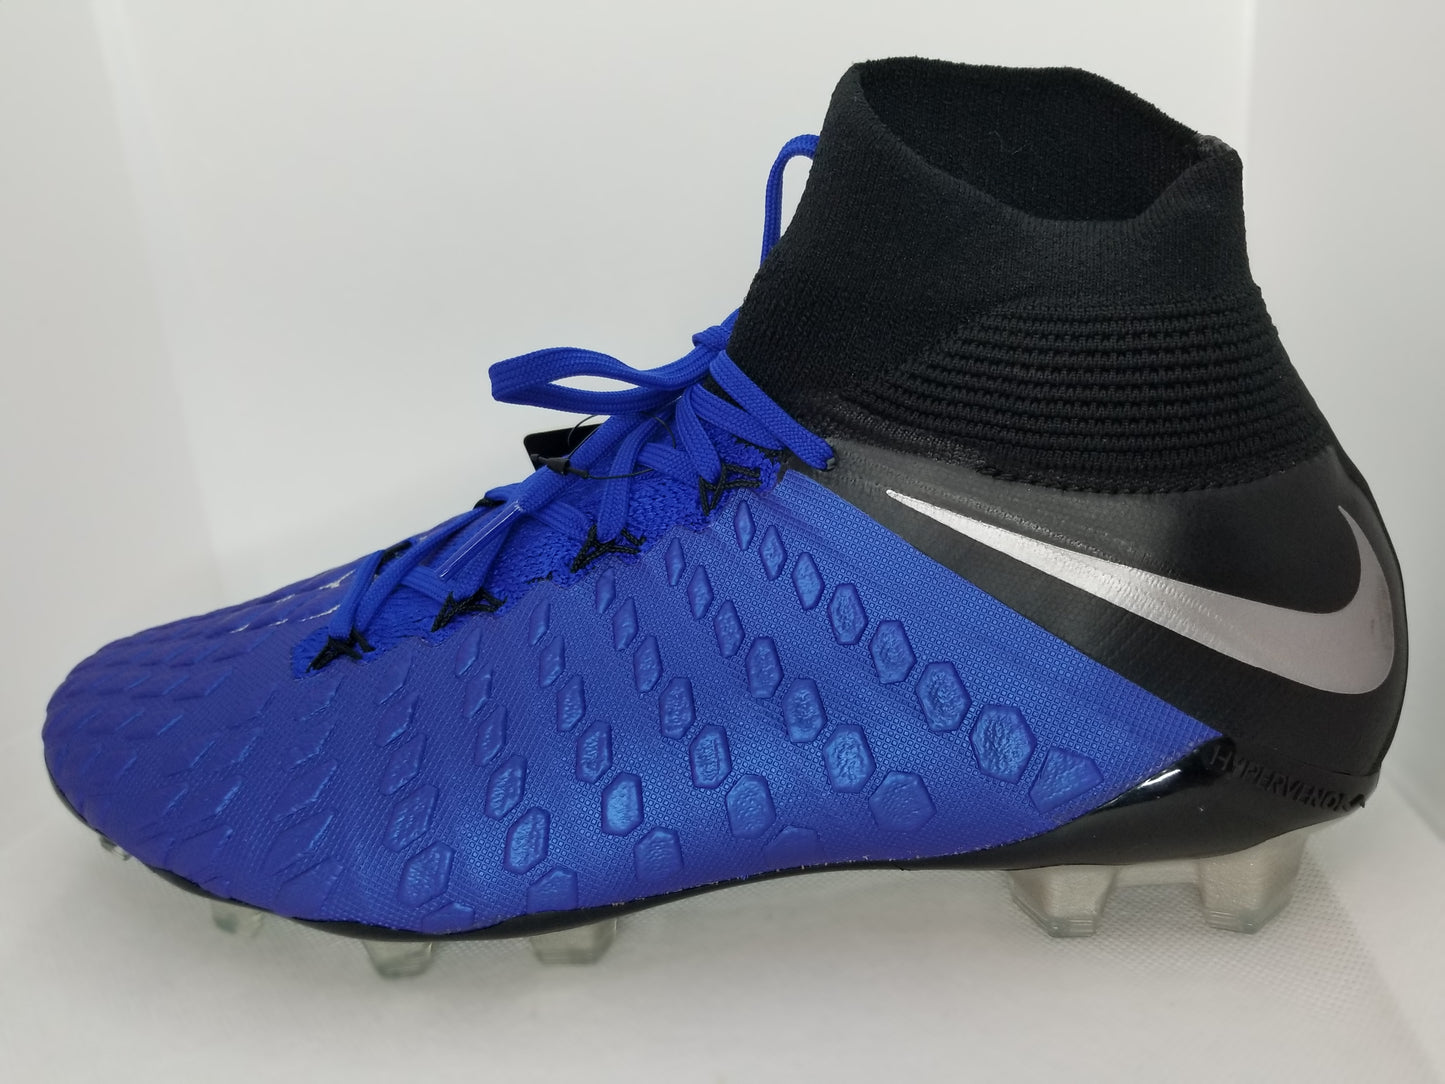 Nike Hypervenom 3 Dynamic Fit – Boots